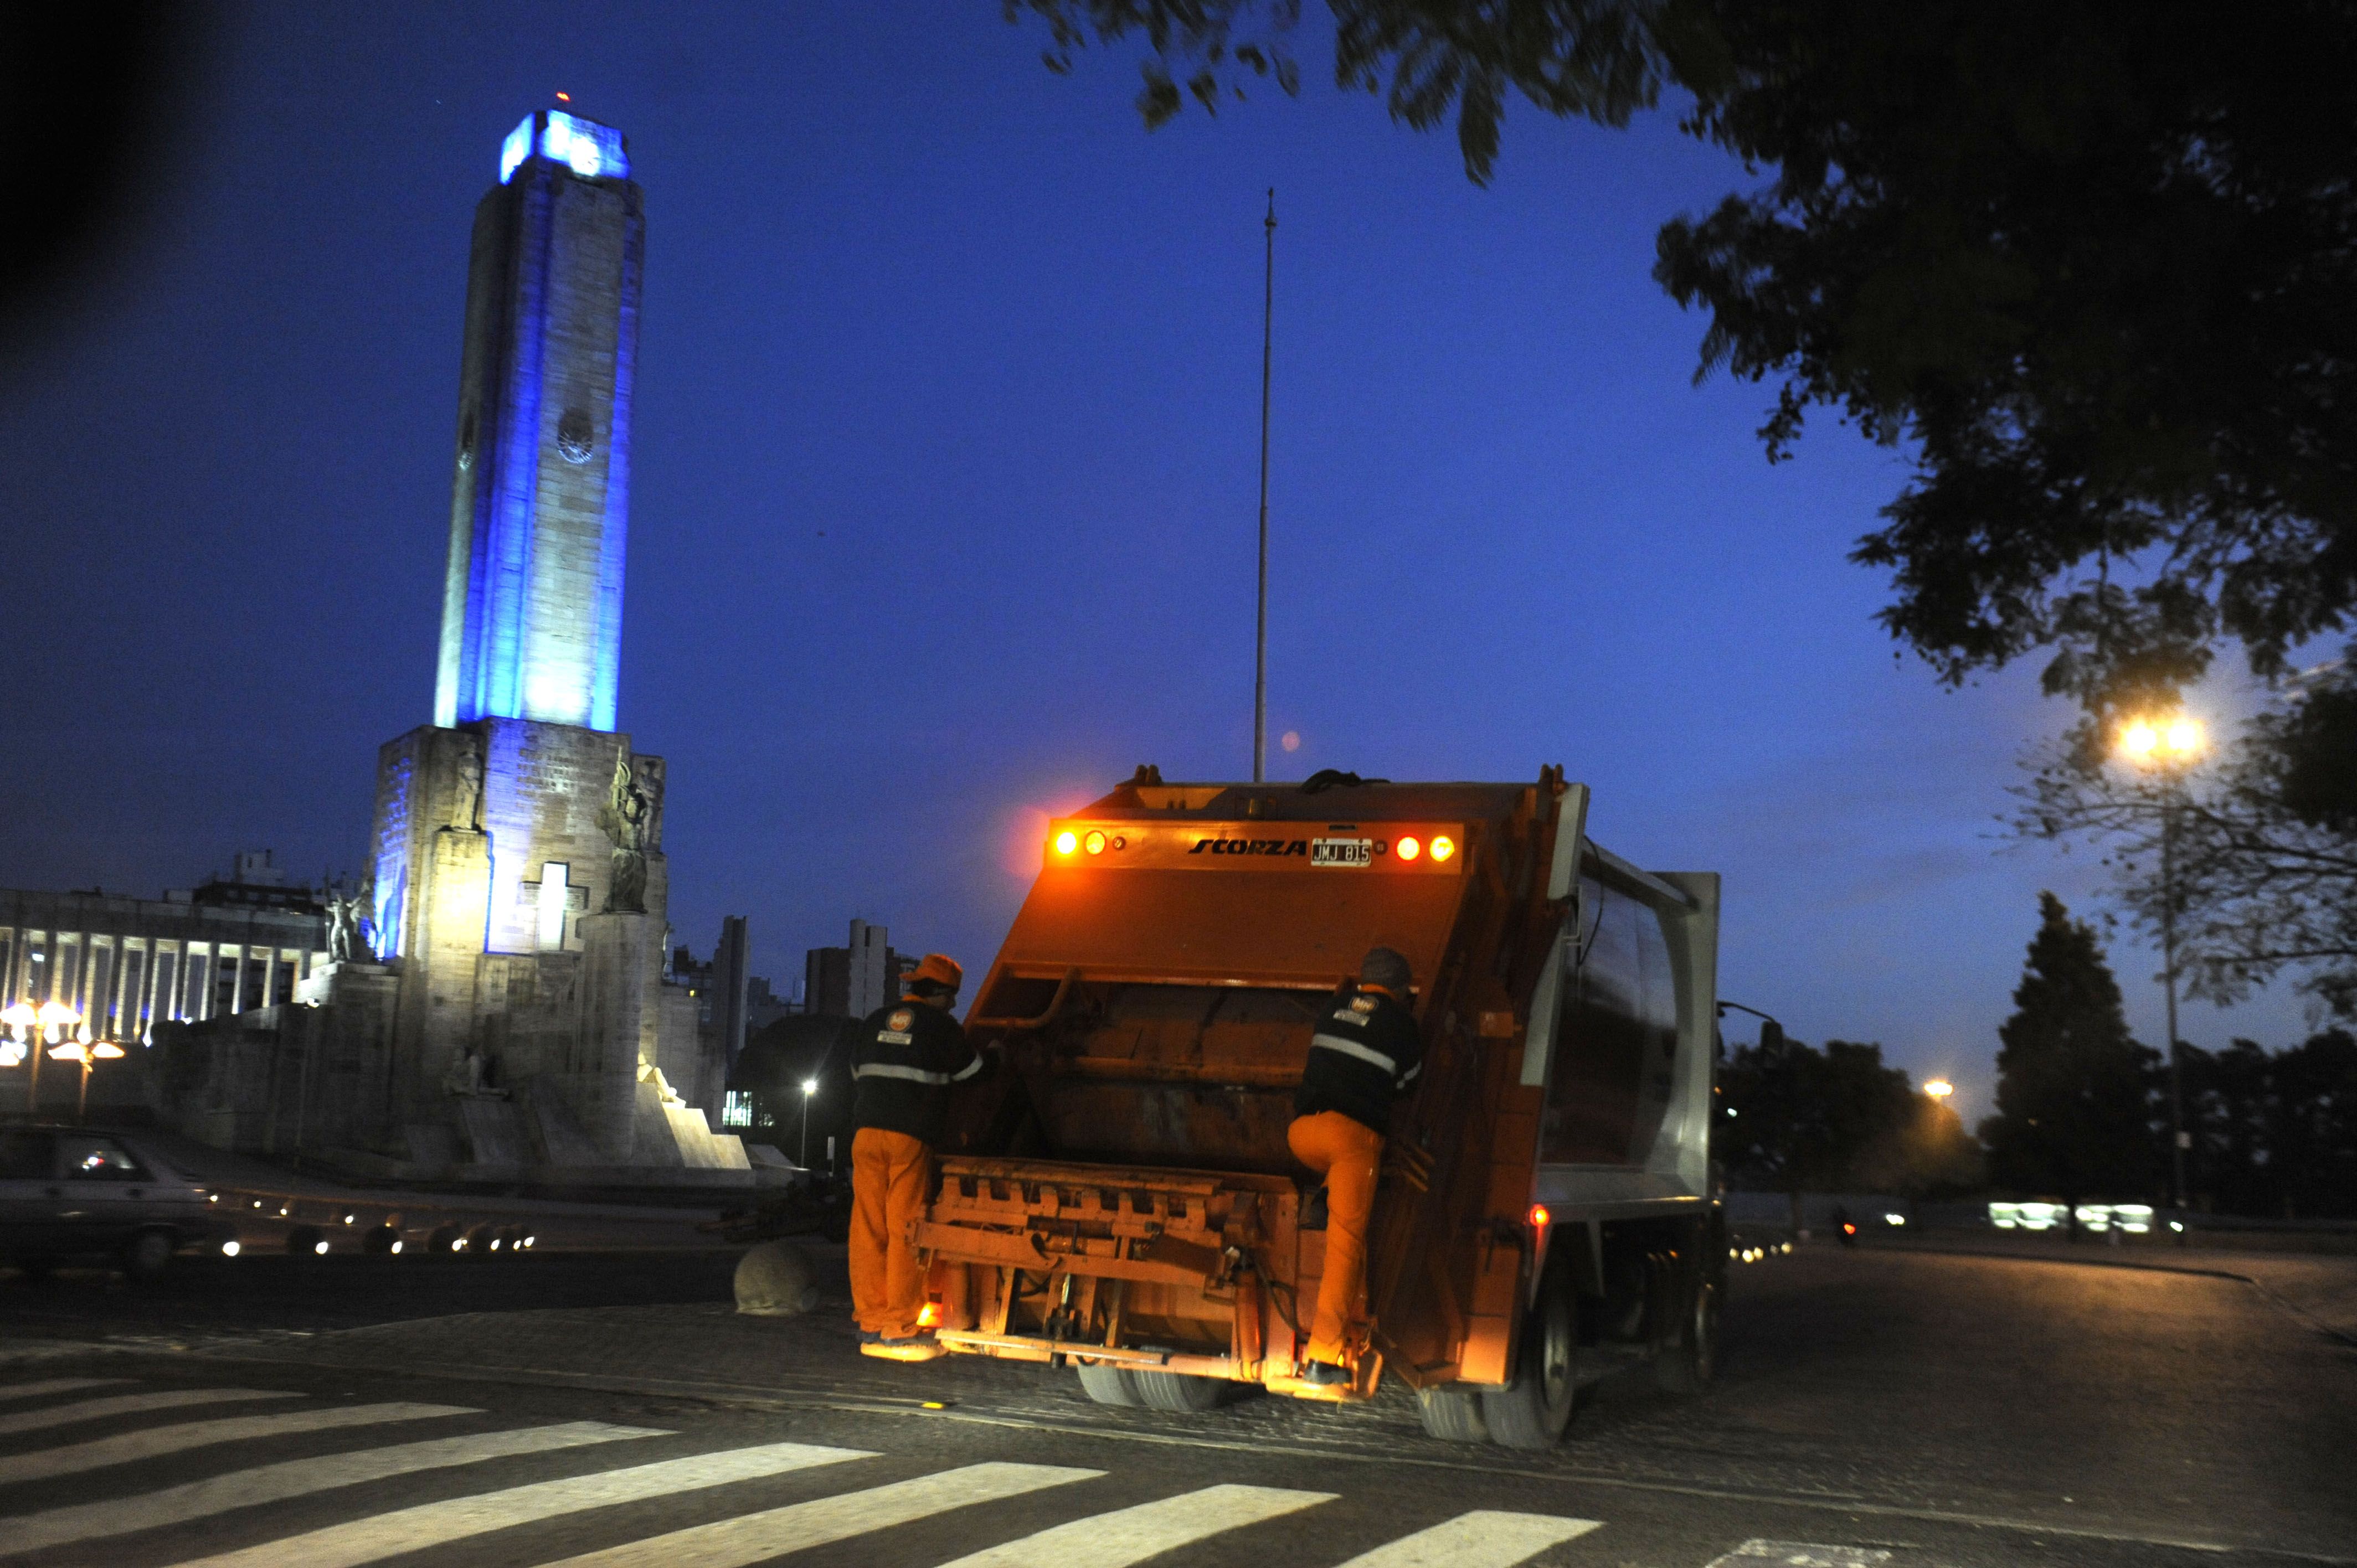 La Secretaría de Servicios Públicos dispuso un esquema de recolección de residuos especial con vistas al paro de camioneros el próximo lunes (Foto: S. Salinas).